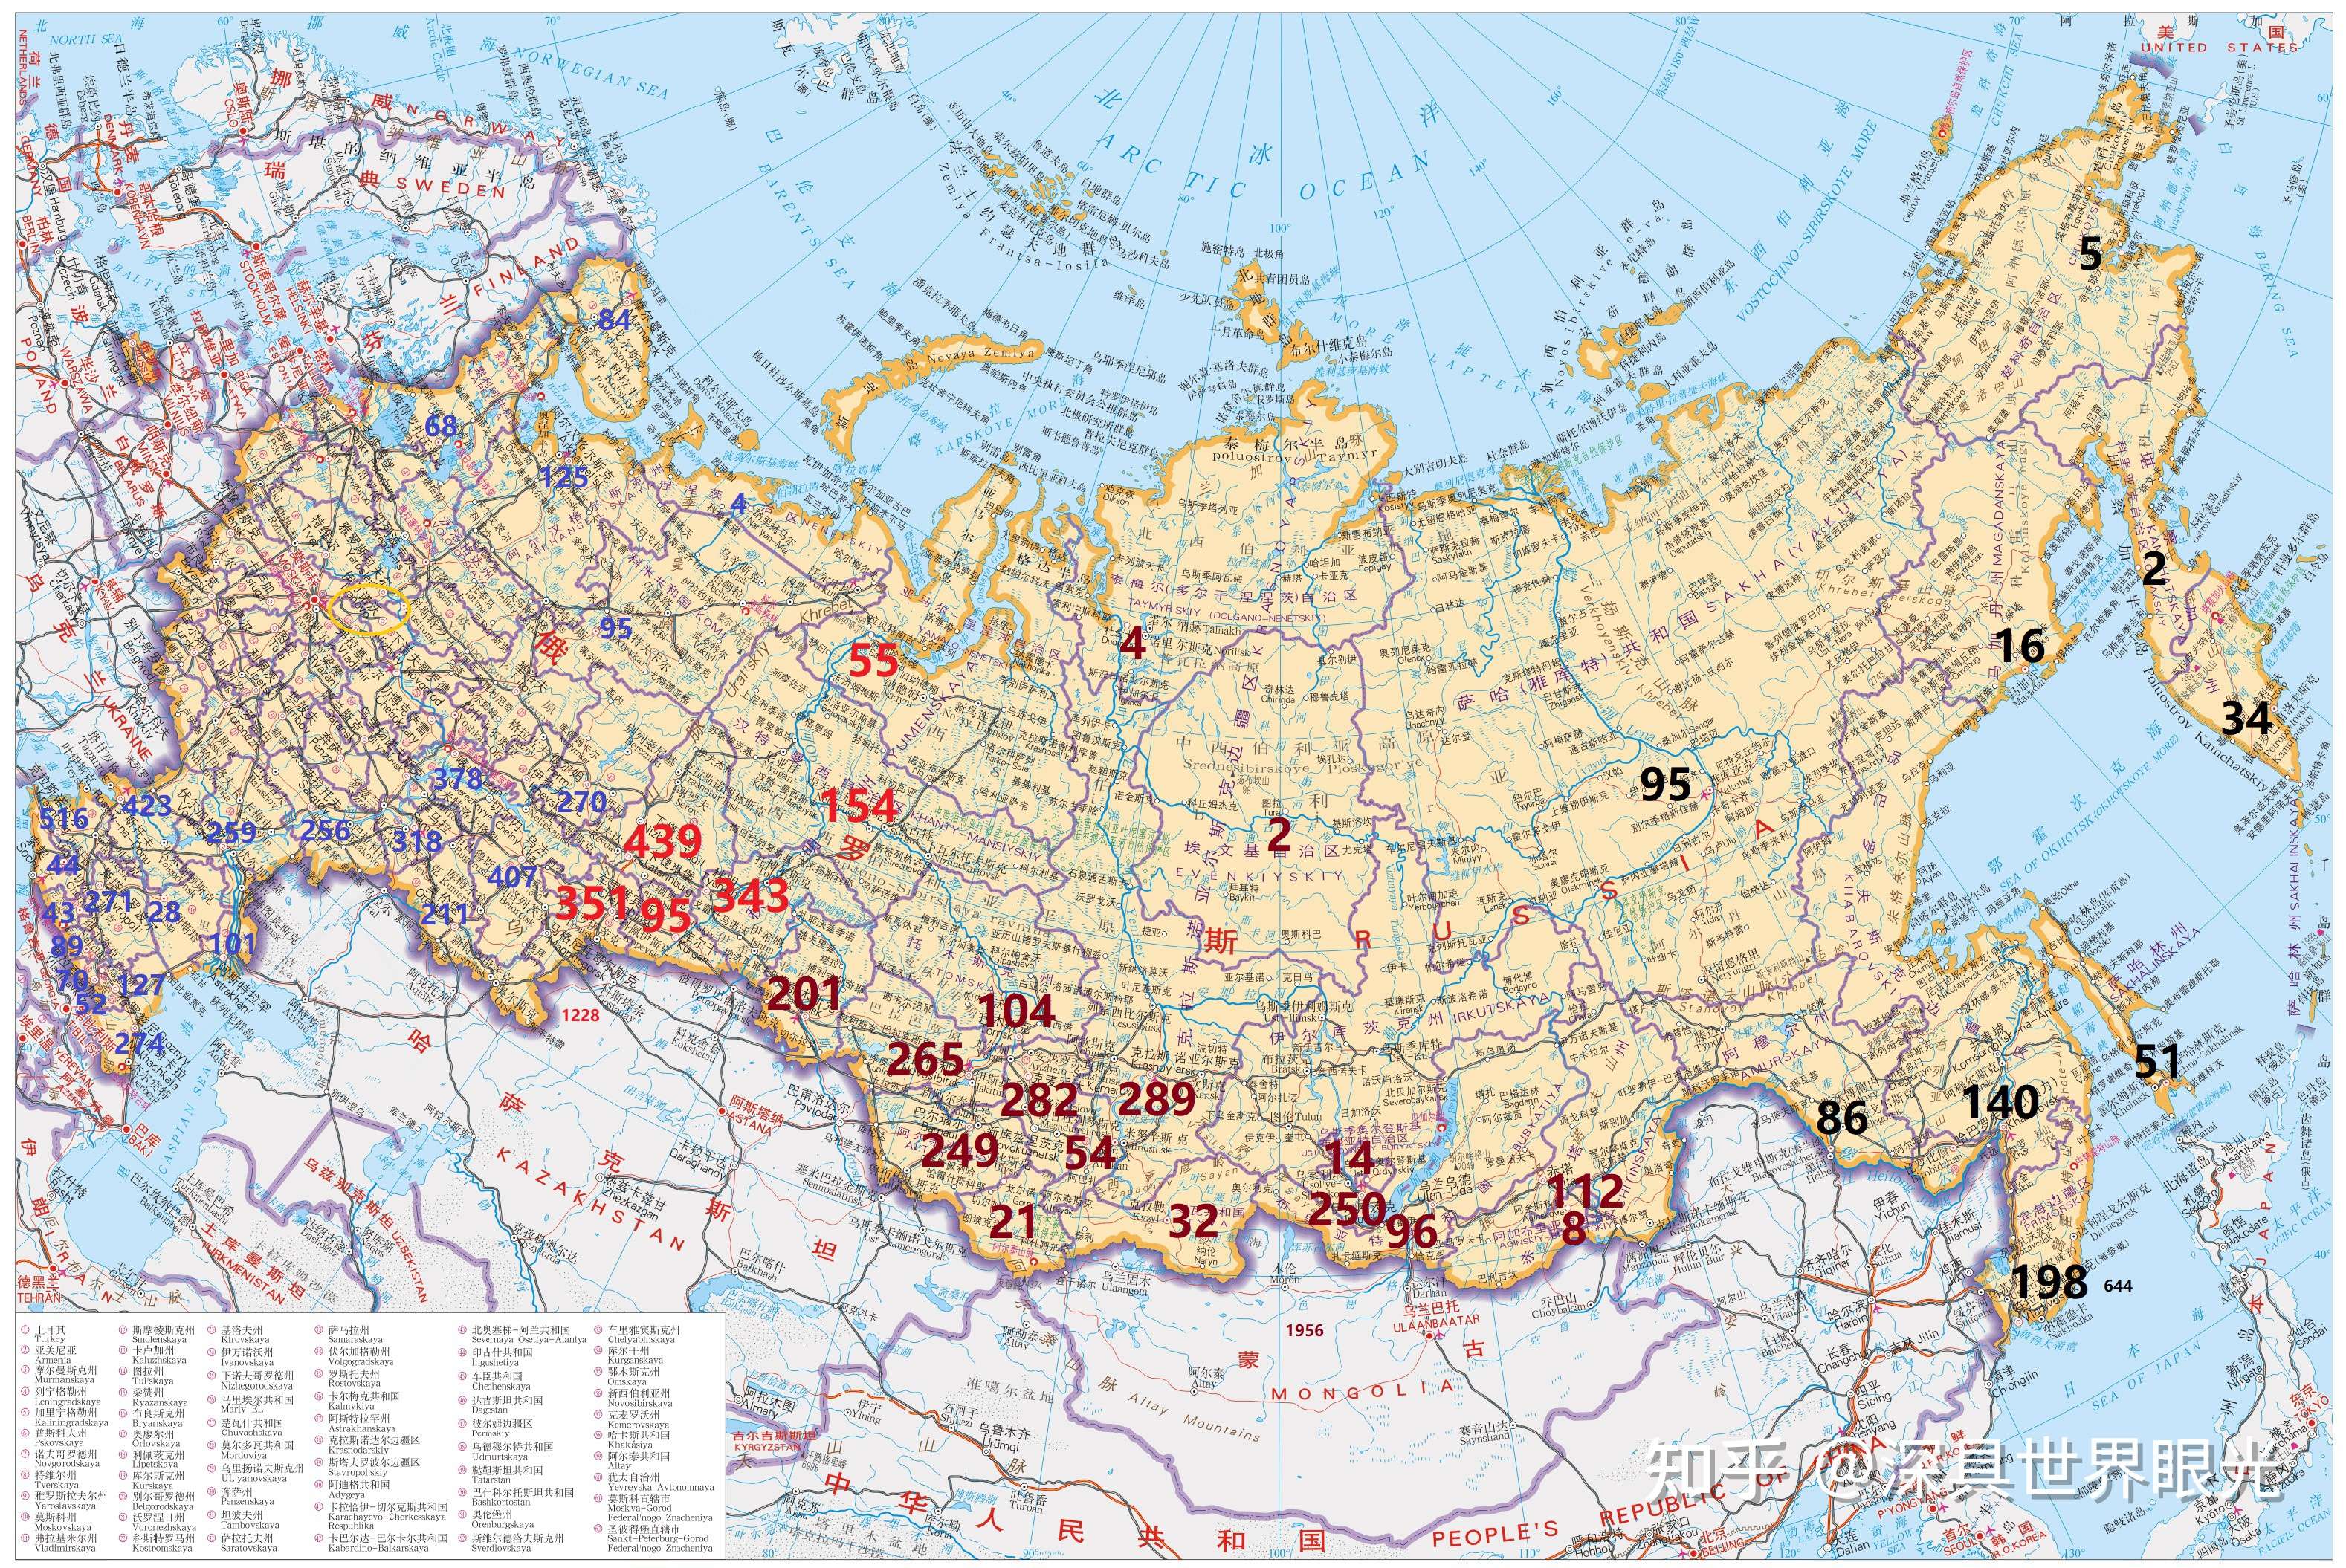 西伯利亚行政区划图片